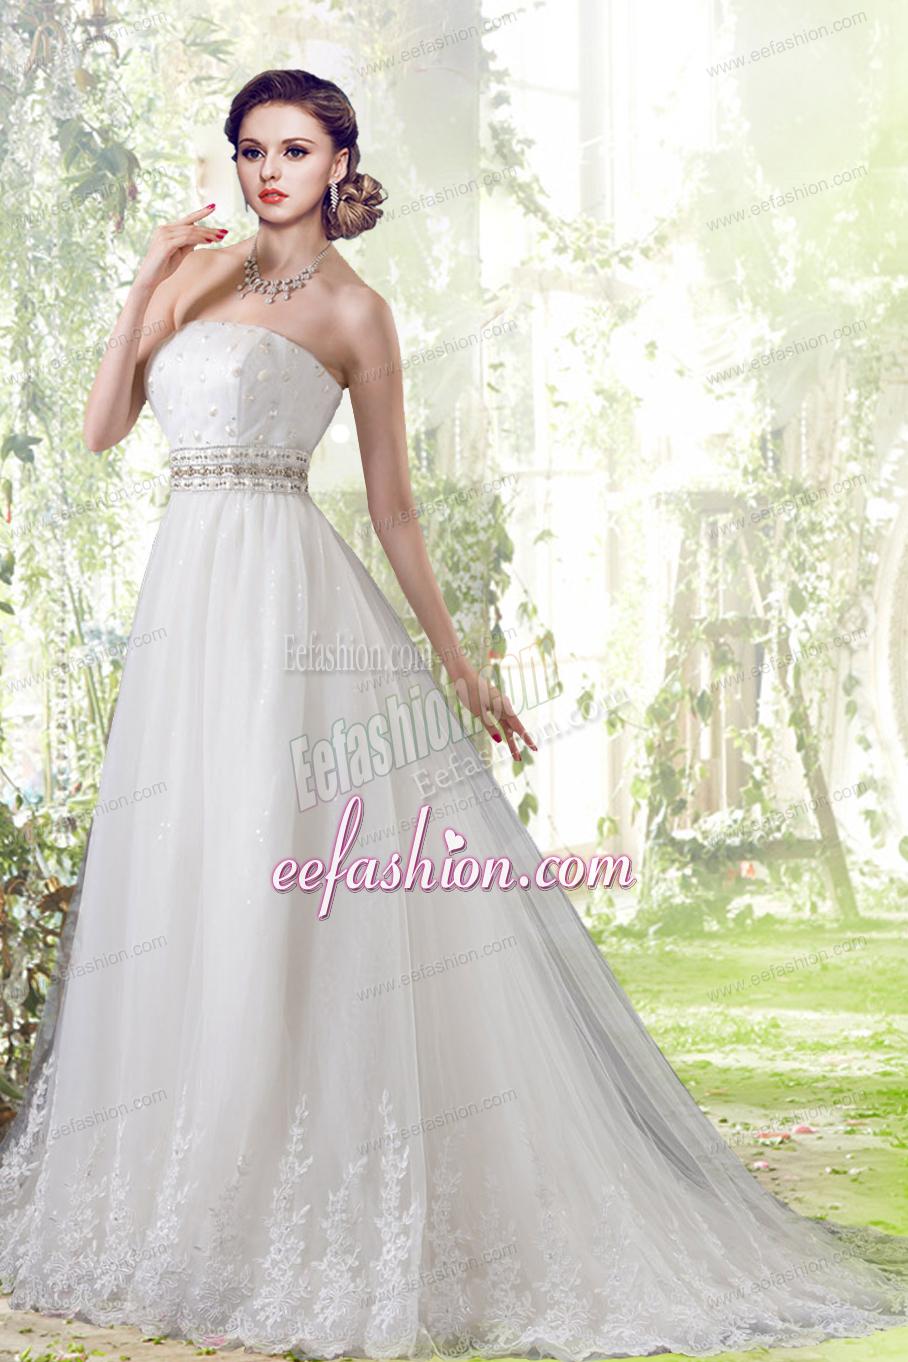 Elegant Lace Strapless Brush Train Wedding Dresses with Beading